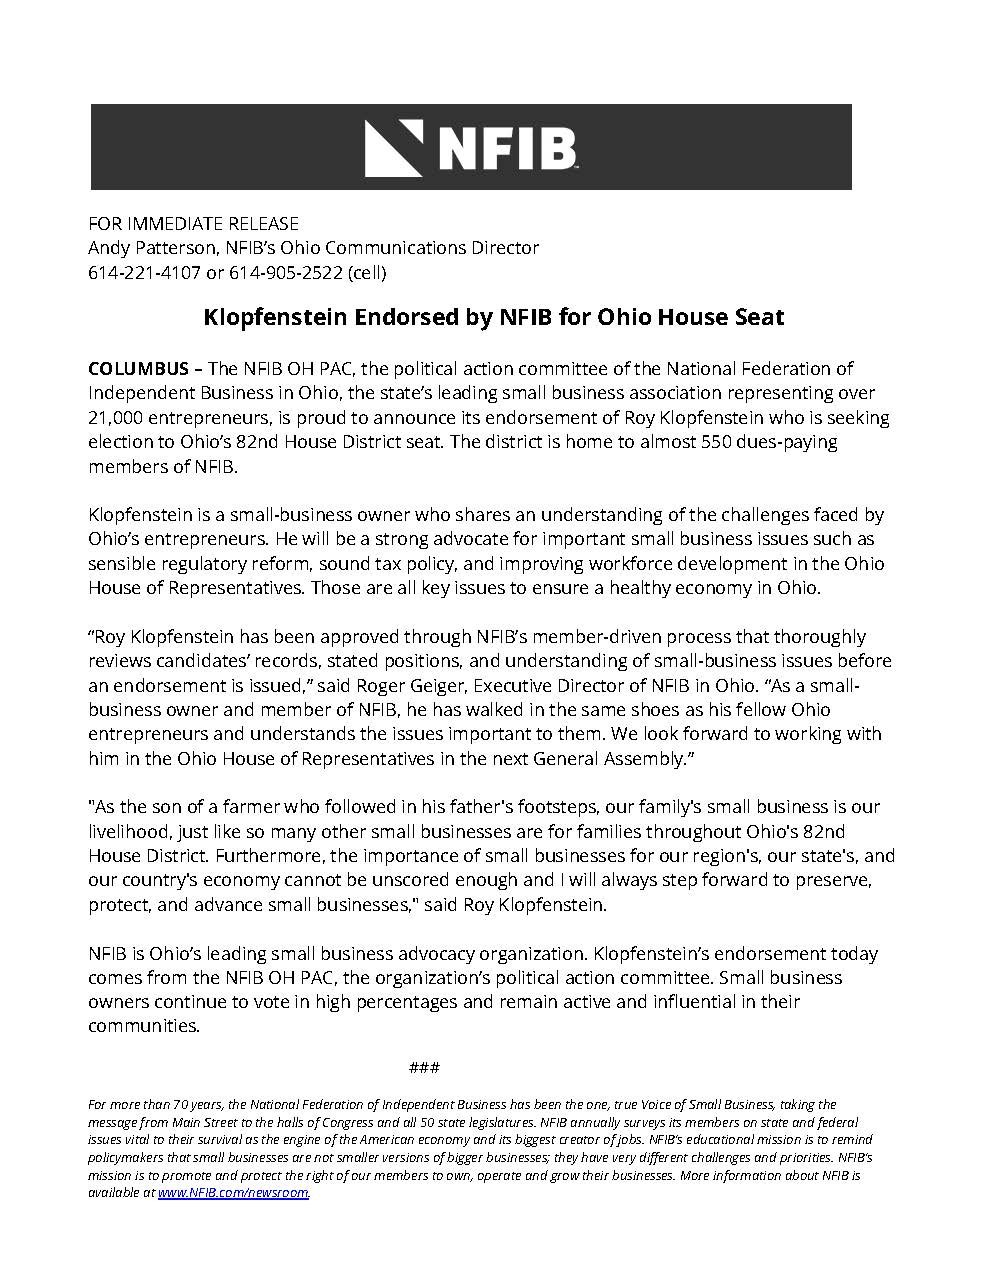 NFIB Endorsement Roy Klopfenstein